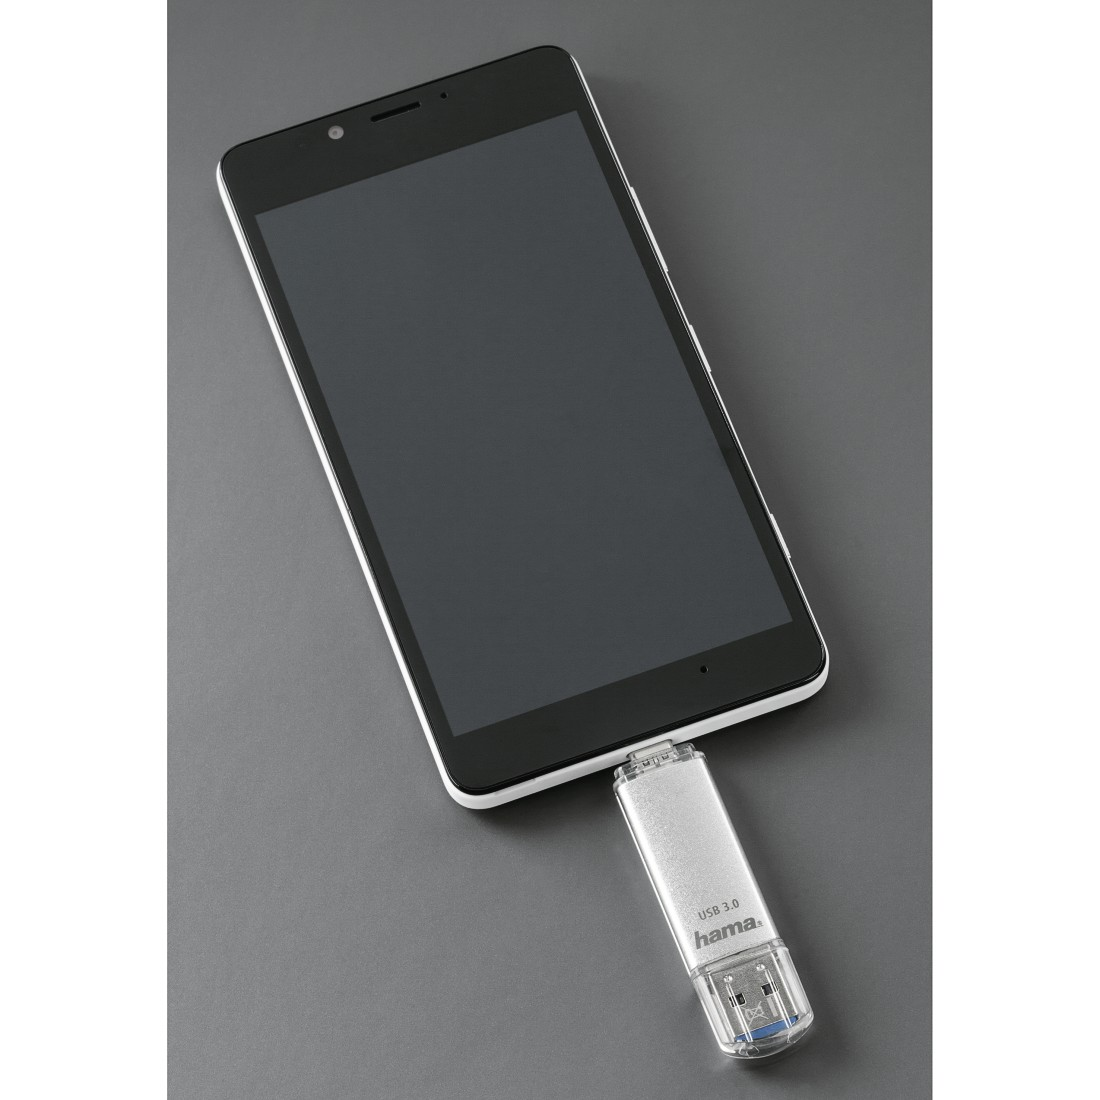 HAMA C-Laeta USB-Stick, 40 MB/s, 128 Silber GB